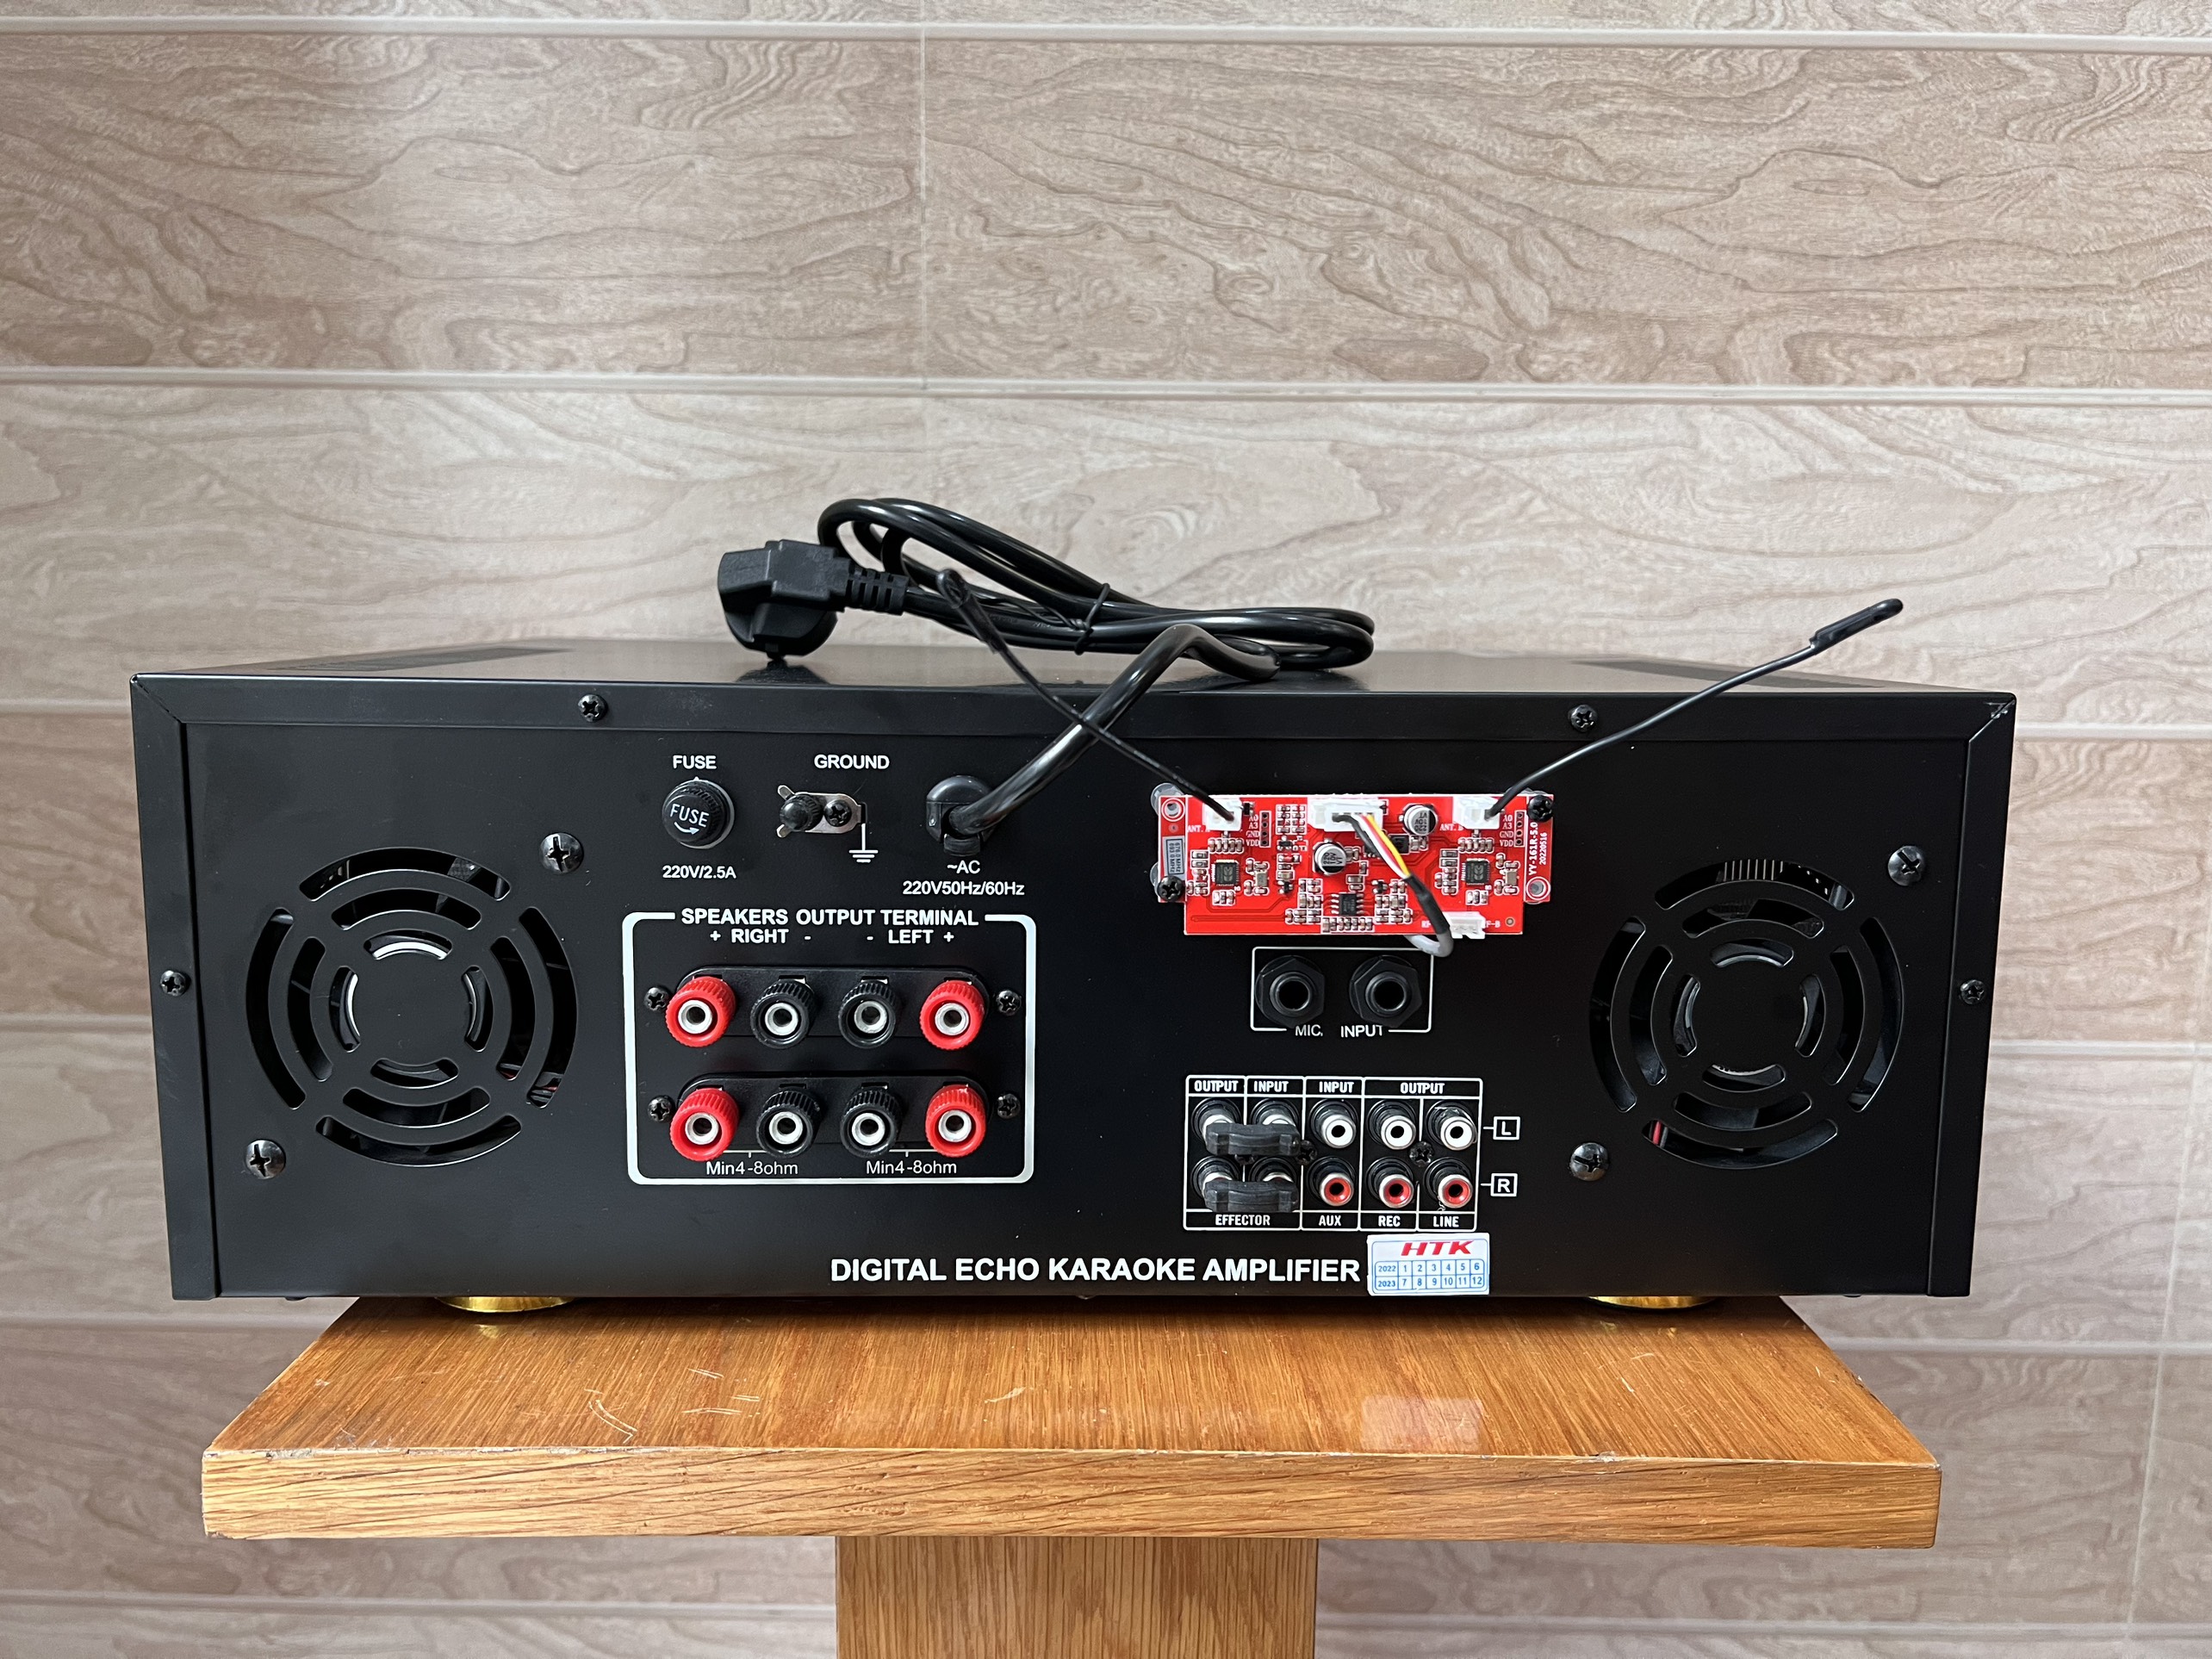 Âmpli karaoke đẩy liền vang liền micro không dây cao cấp BellPlus PA - 8500 Vip (hàng chính hãng).